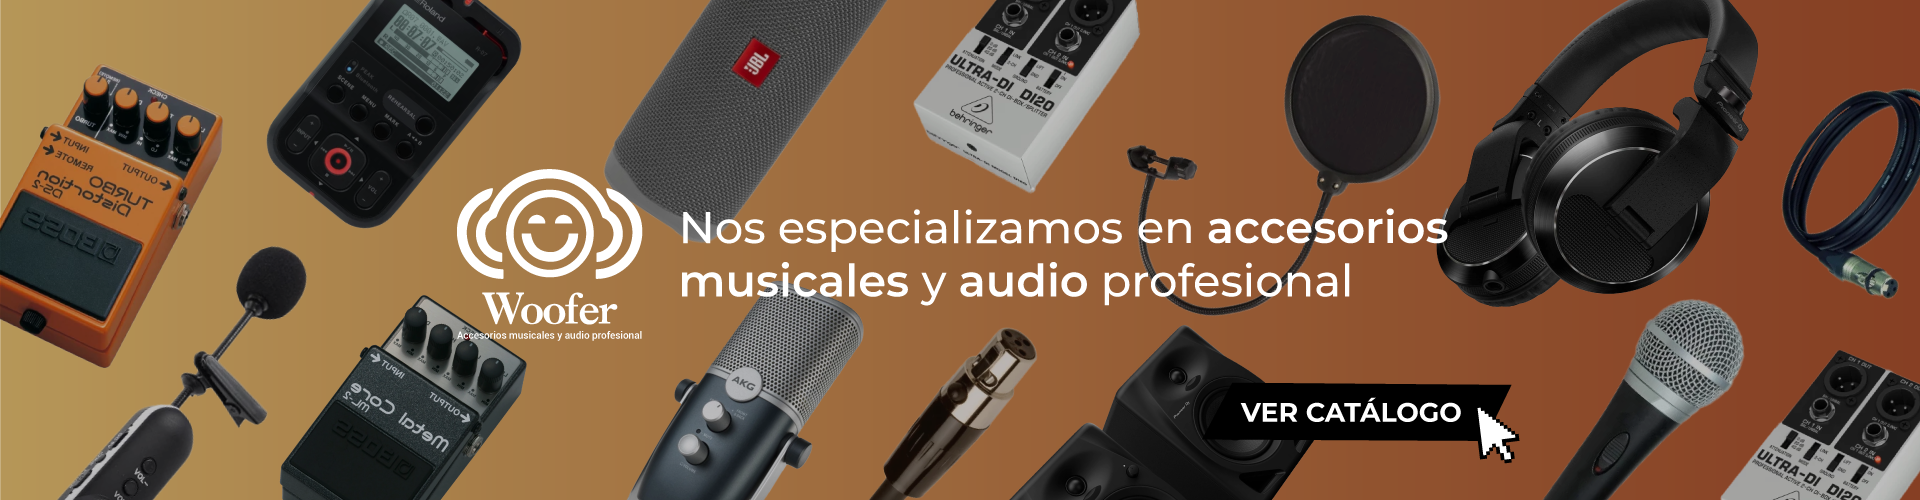 Nos especializamos en accesorios musicales y audio profesional